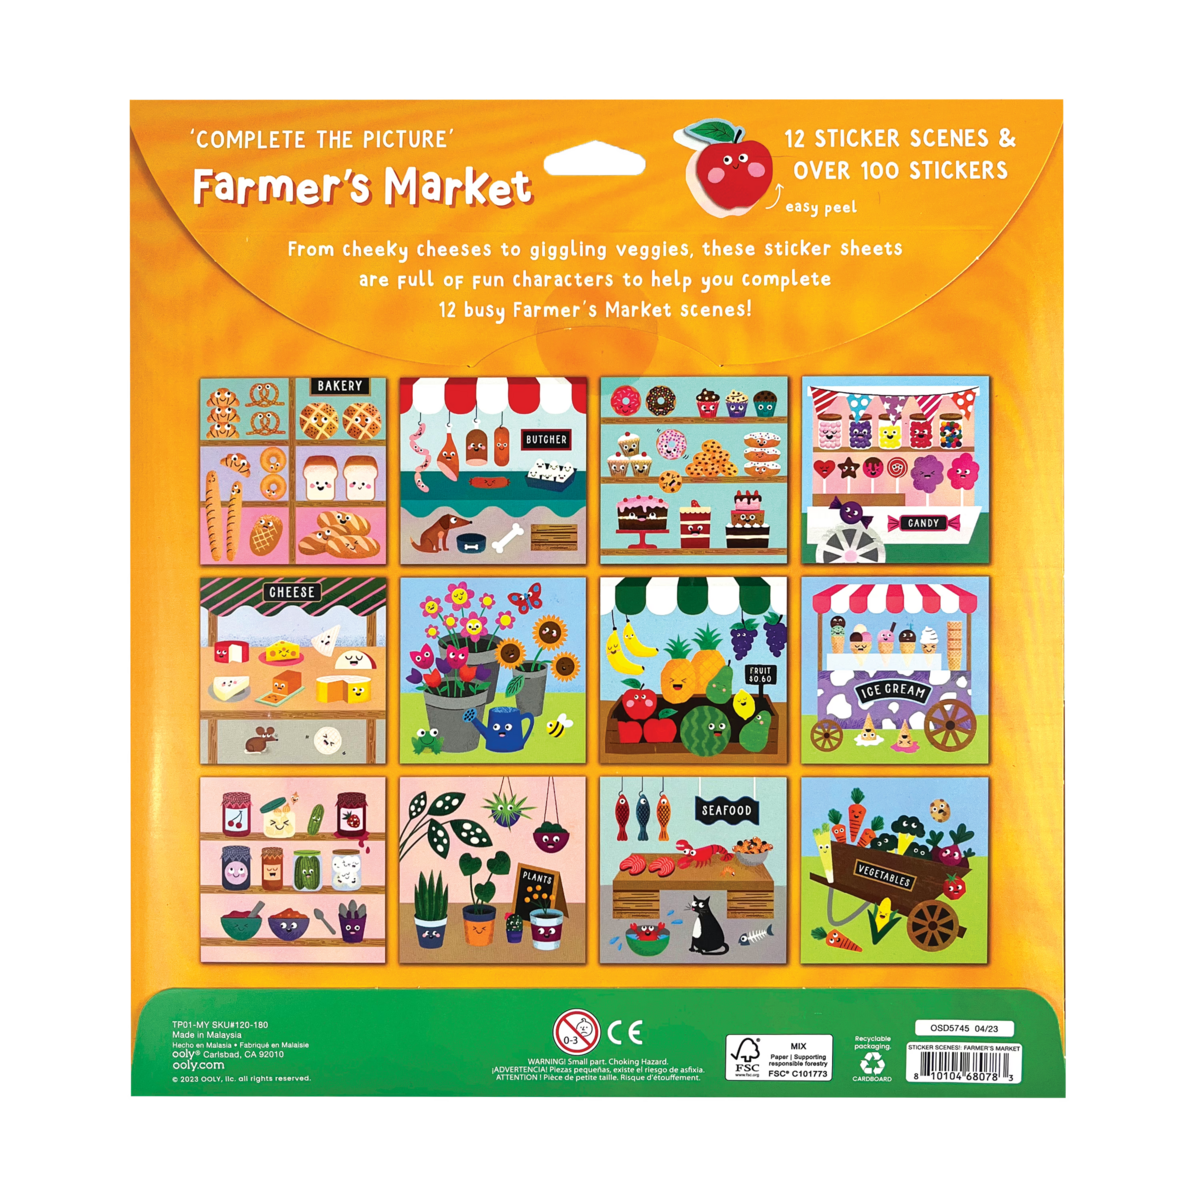 Farmer's Market Sticker Scenes! back of packaging